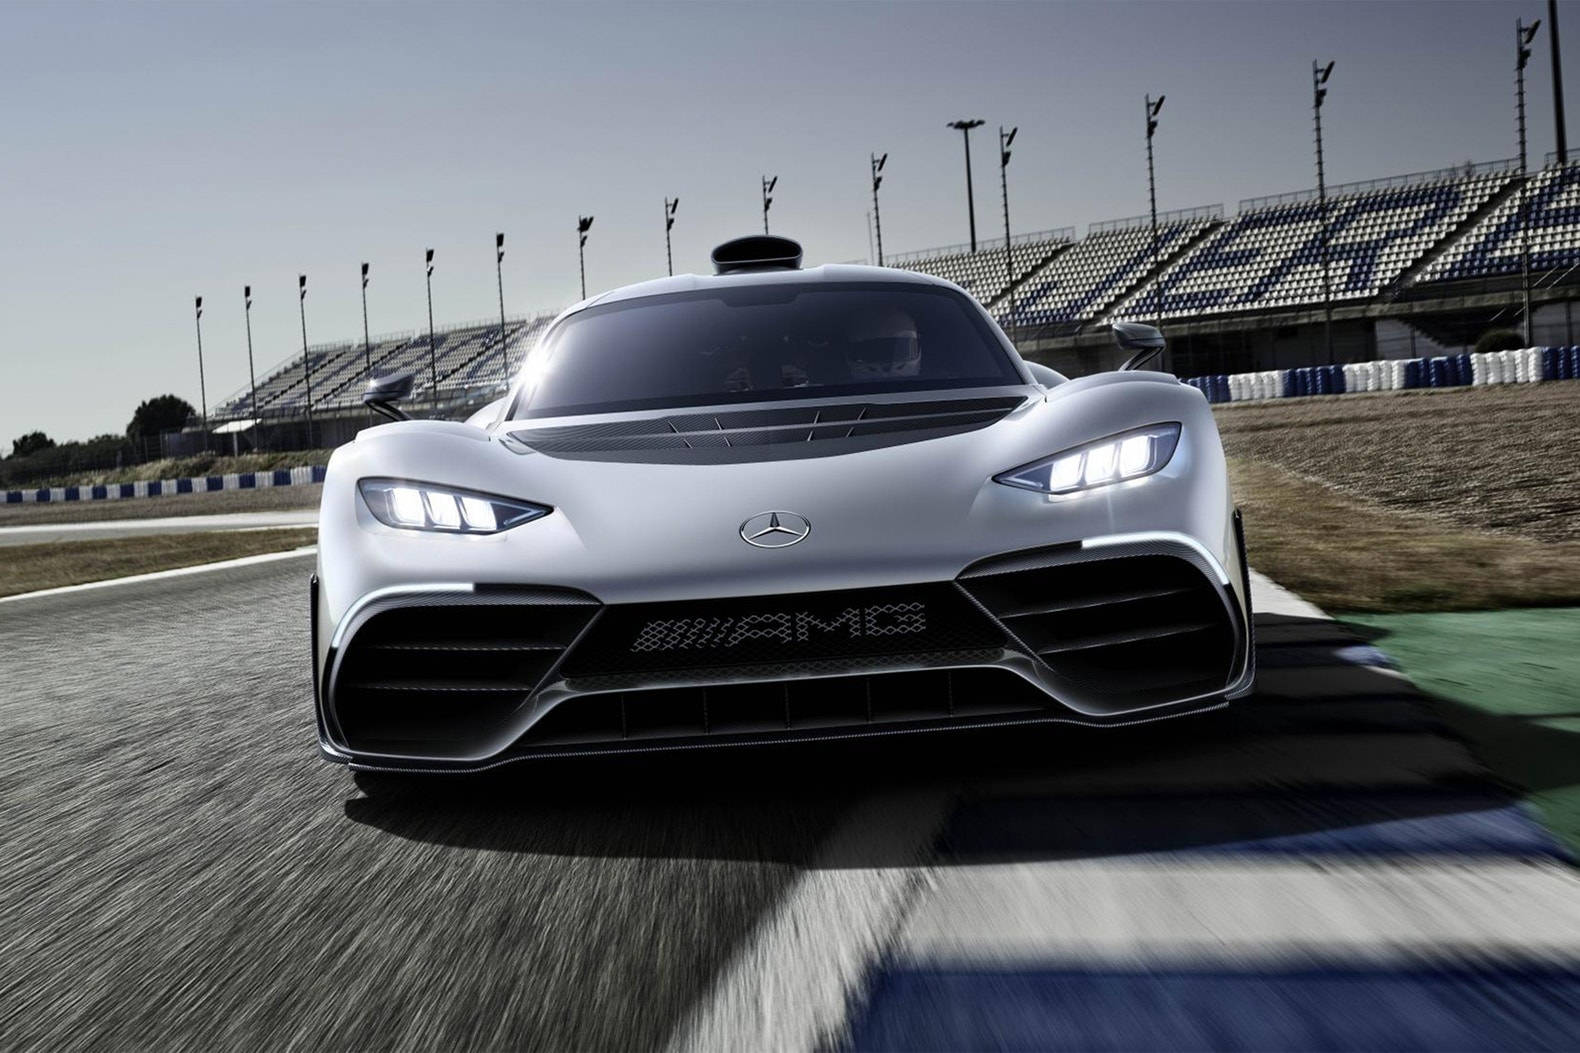 內置 F1 引擎！Mercedes-AMG Project One 超級跑車驚艷亮相